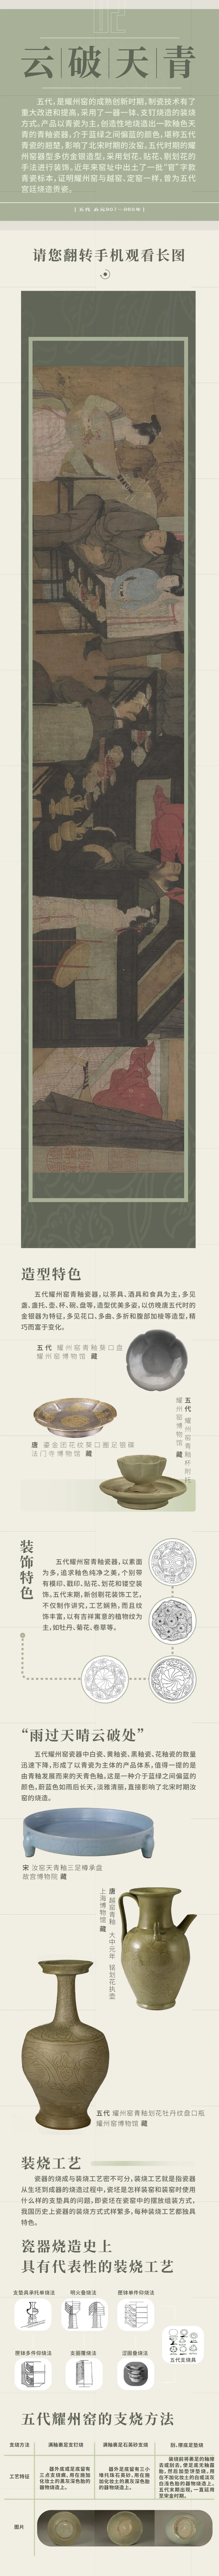 线上展览：《范金琢玉——耀州窑历代陶瓷精品展》第二期（云破天青）